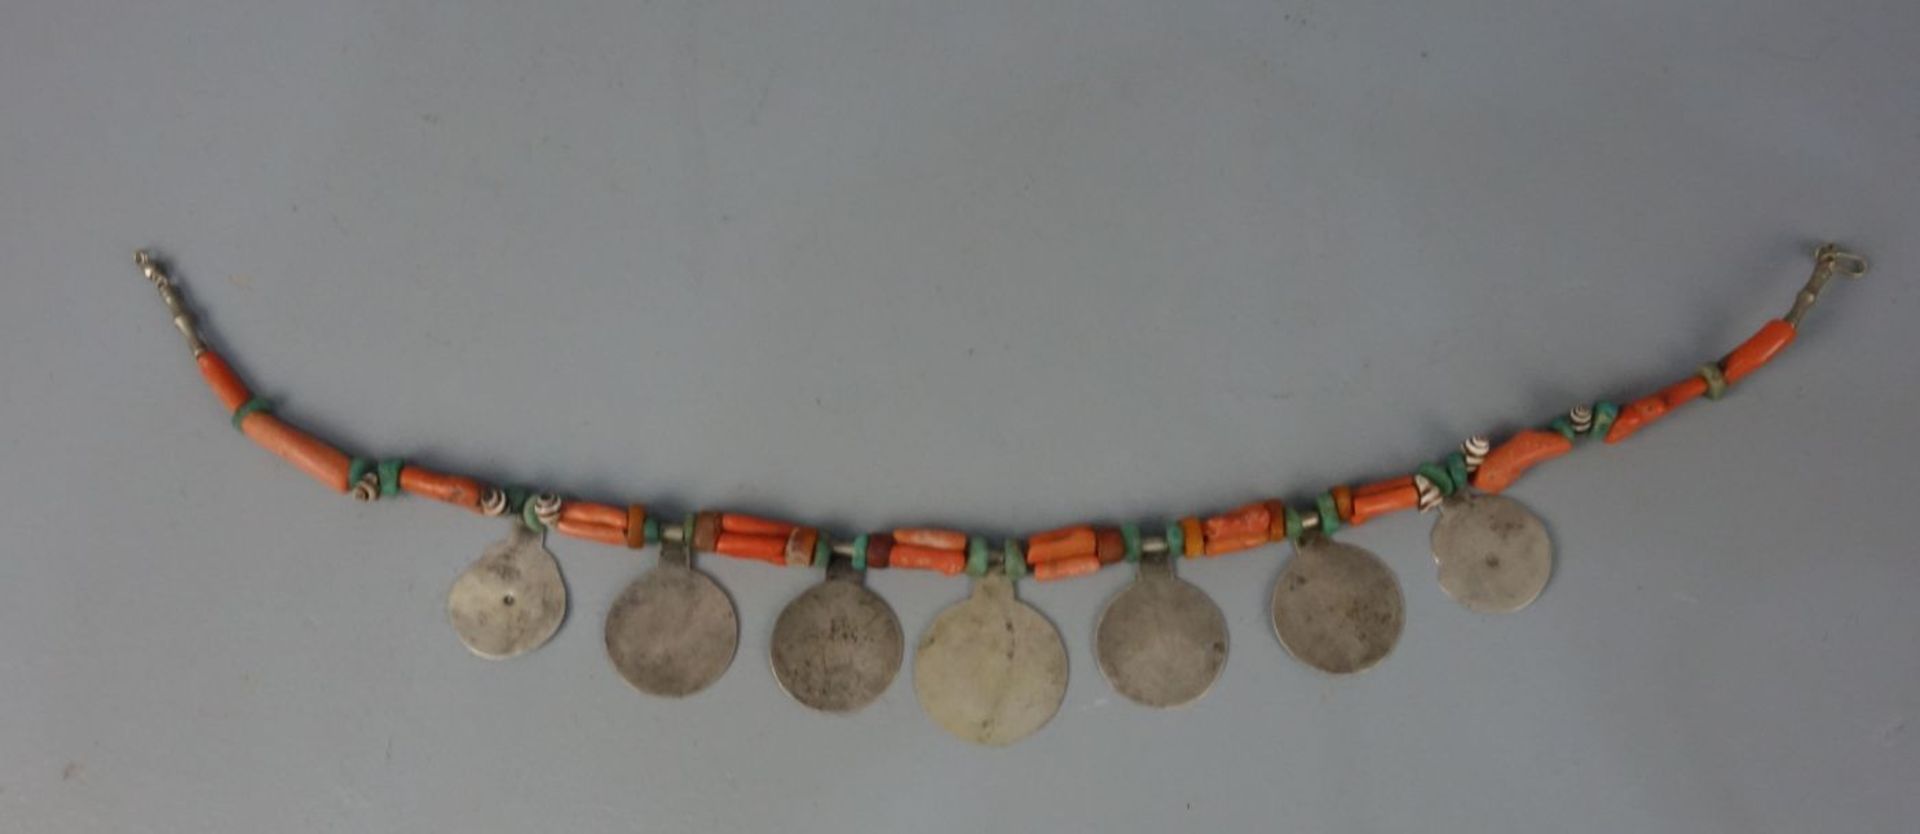 BERBER-SCHMUCK: KETTE / oriental necklace, Taliouline / Marokko. Bernstein, Muscheln, Koralle, - Bild 2 aus 2